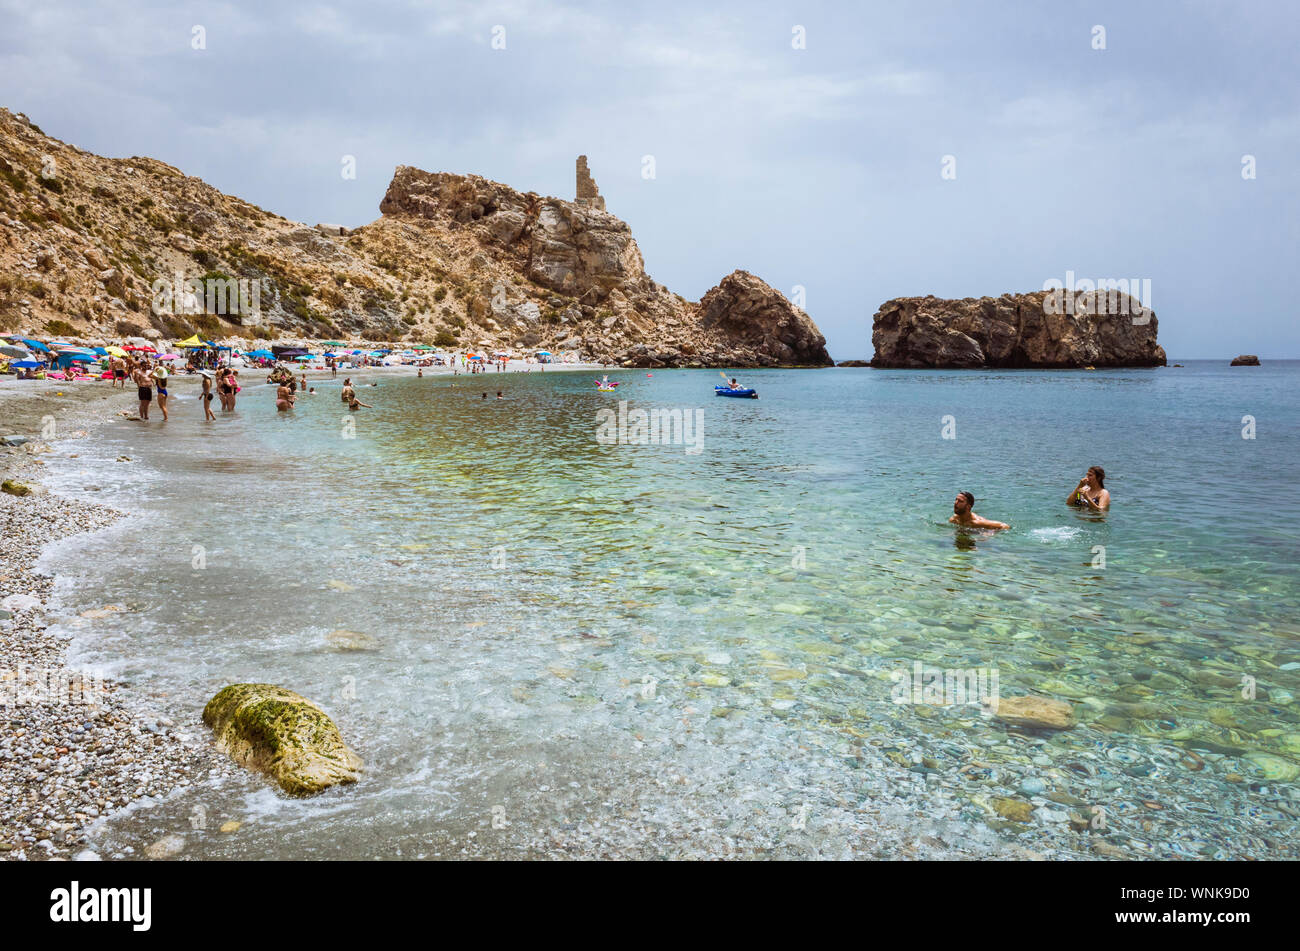 Castell de Ferro-Gualchos, Granada province, Andalusia, Spain : People swim at La Rijana beach in the Costa Tropical. Stock Photo